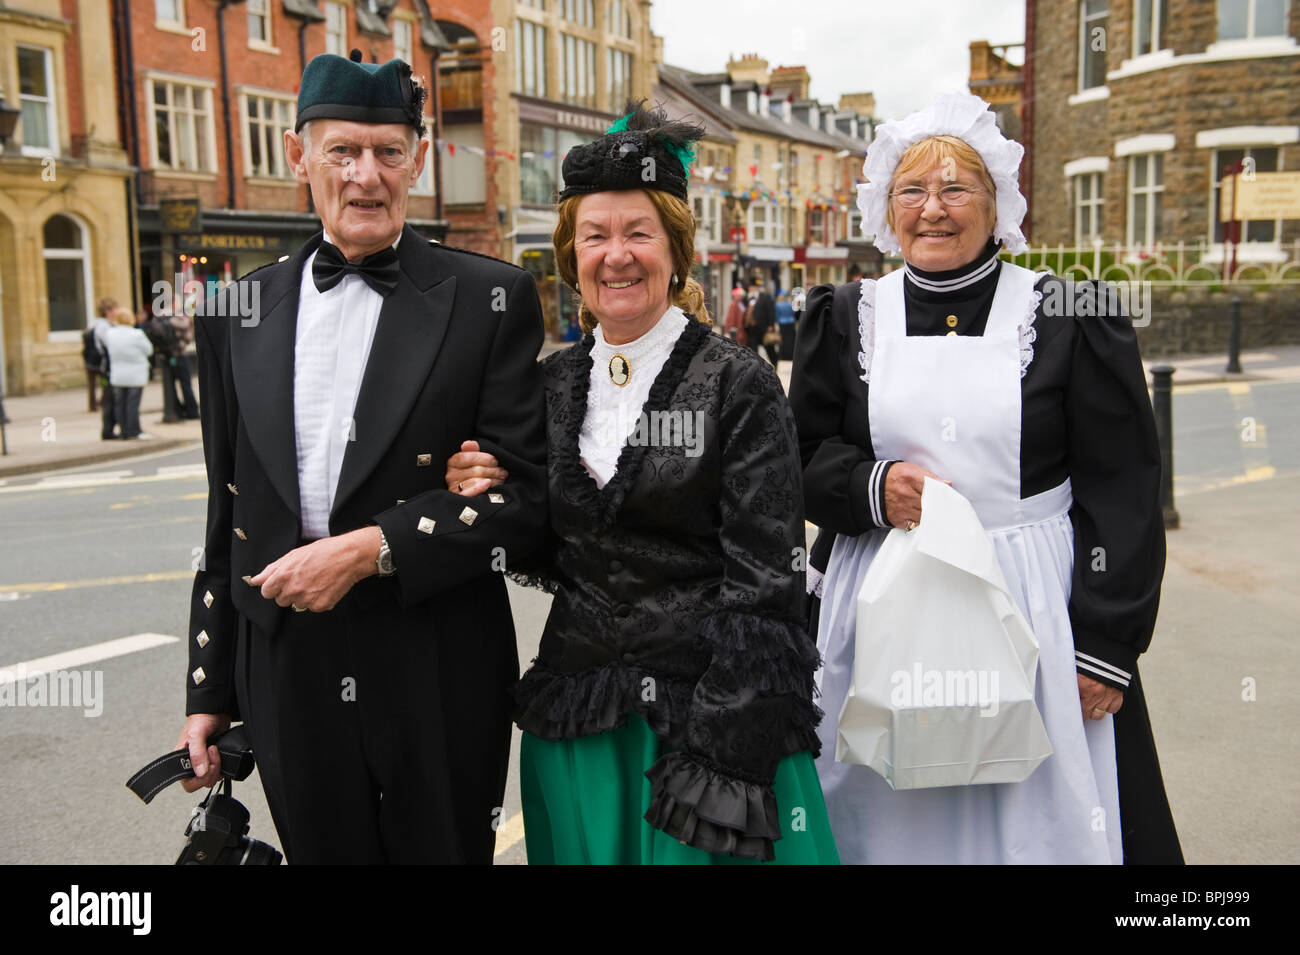 Oberschicht Viktorianer mit Magd in historischen Kostümen auf dem jährlichen viktorianischen Festival in Llandrindod Wells Powys Mid Wales UK Stockfoto